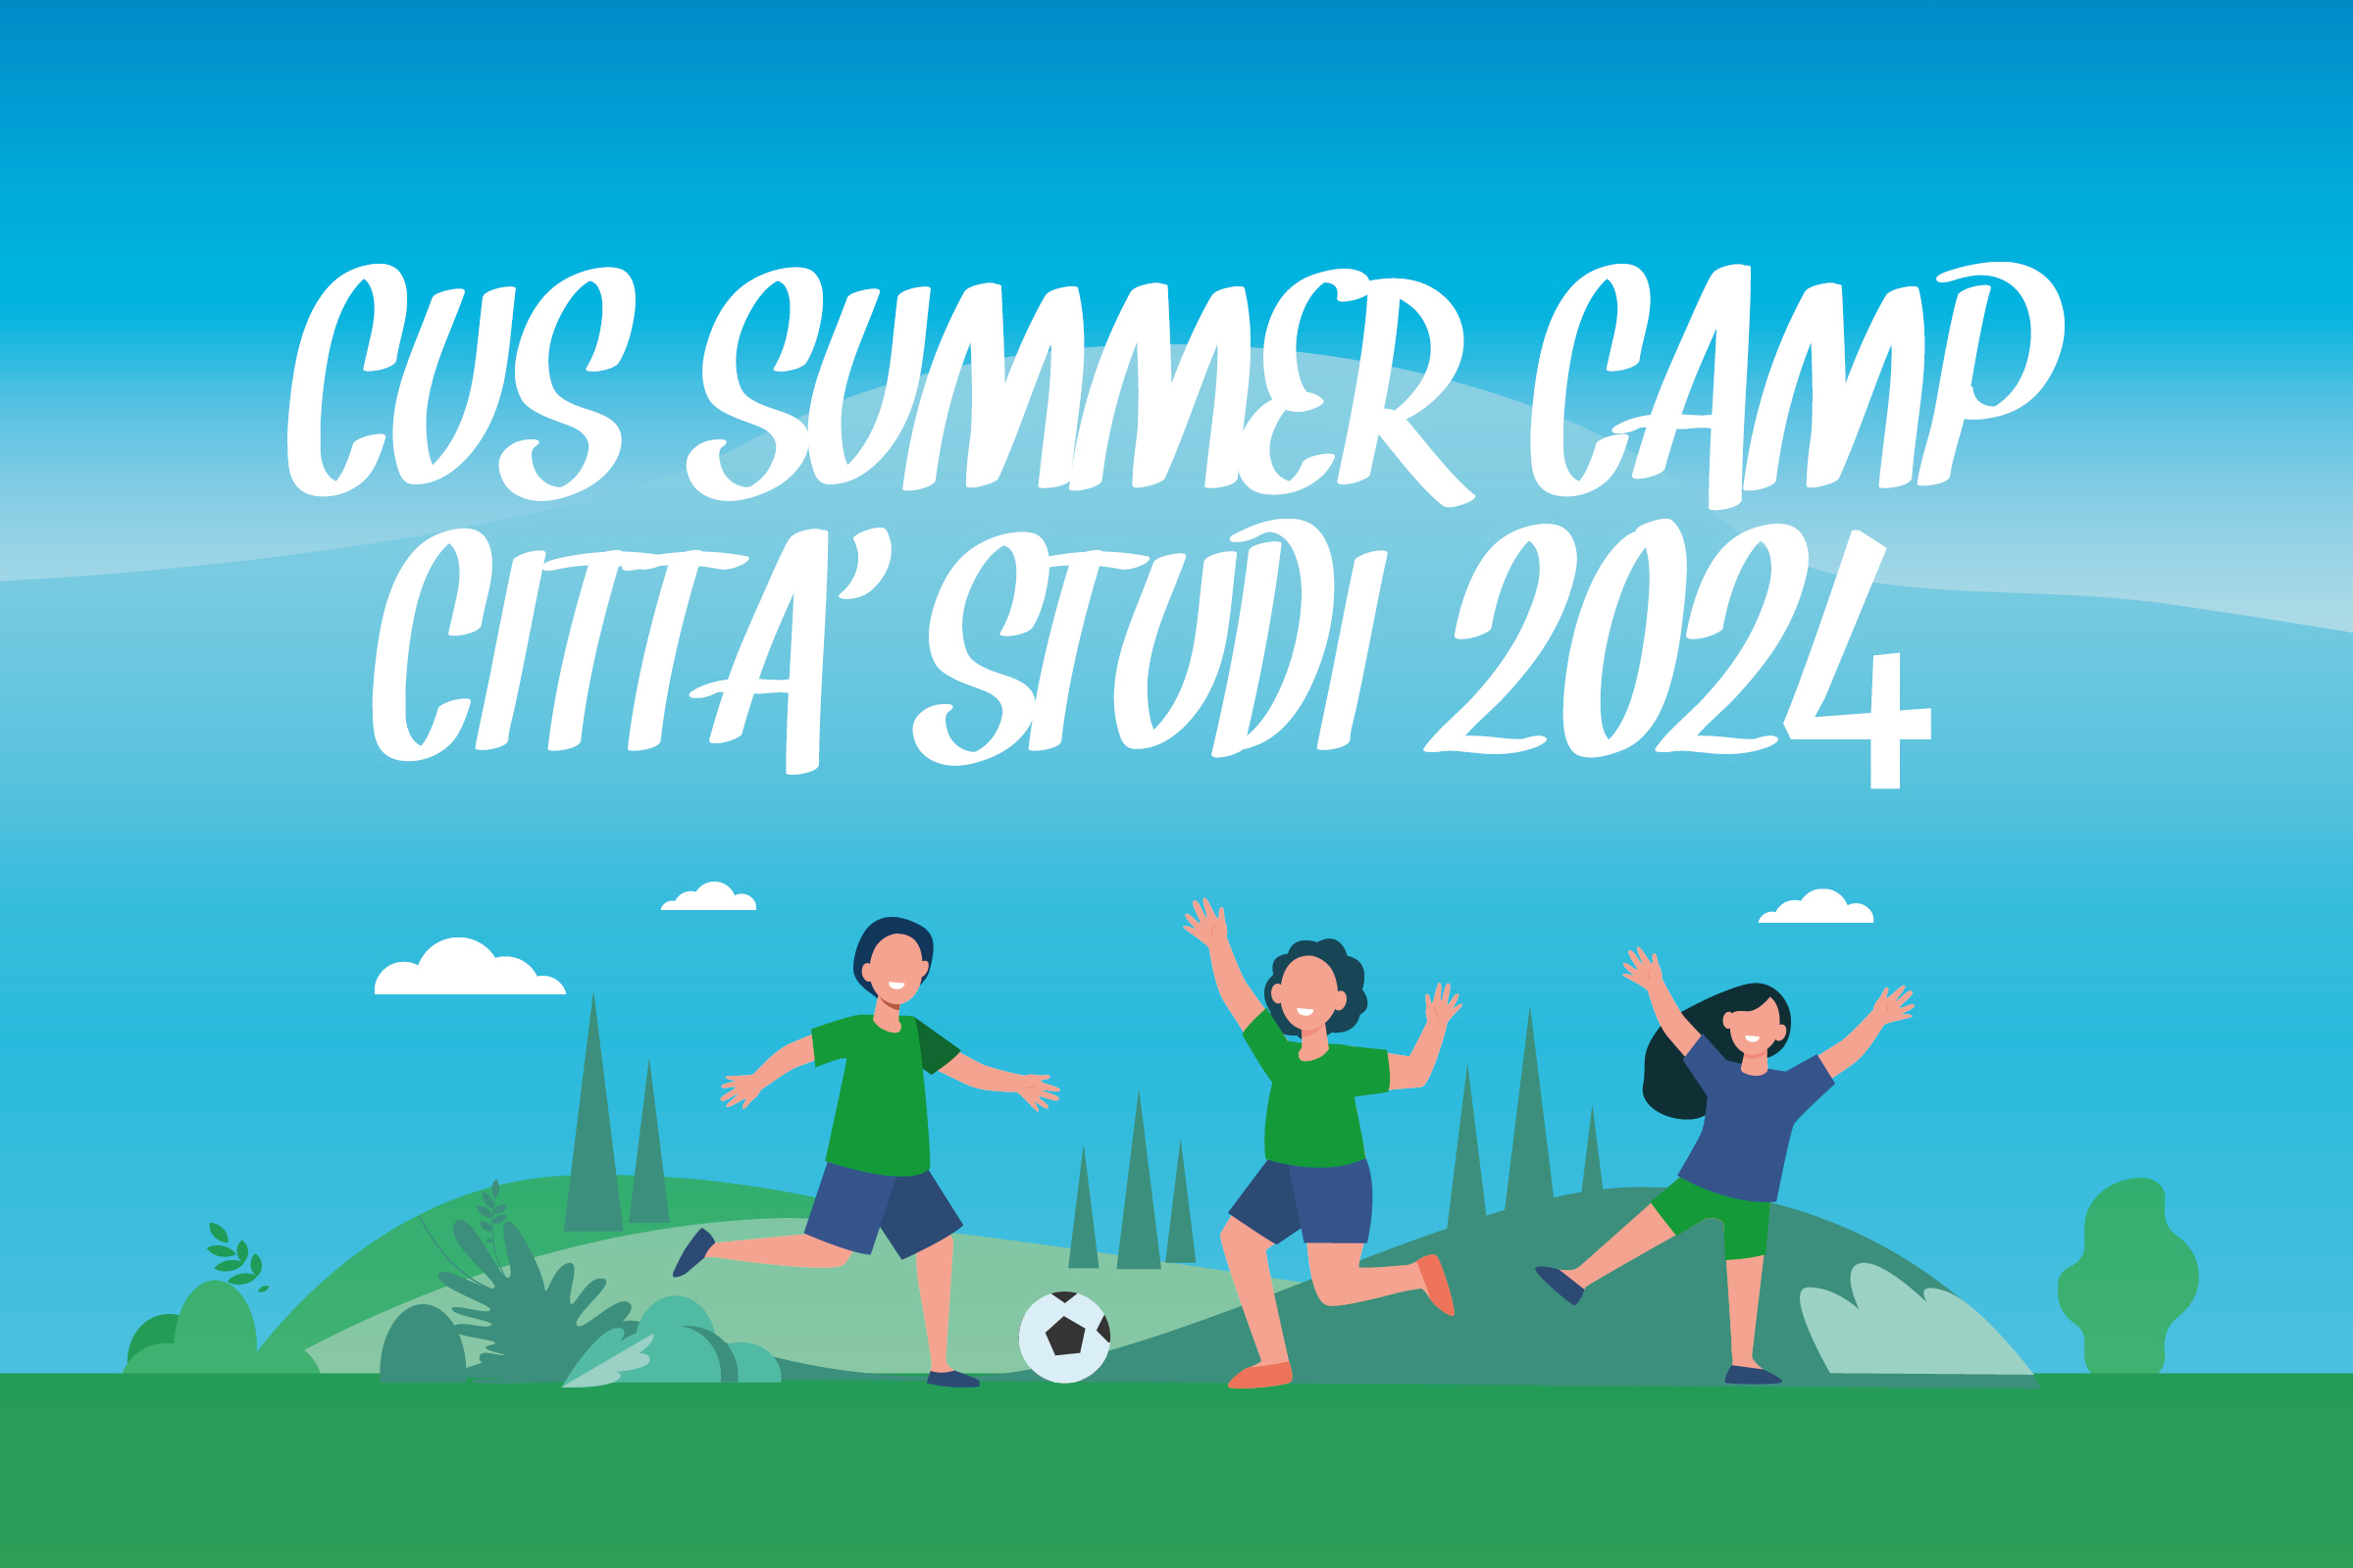 CUS Summer Camp Città Studi